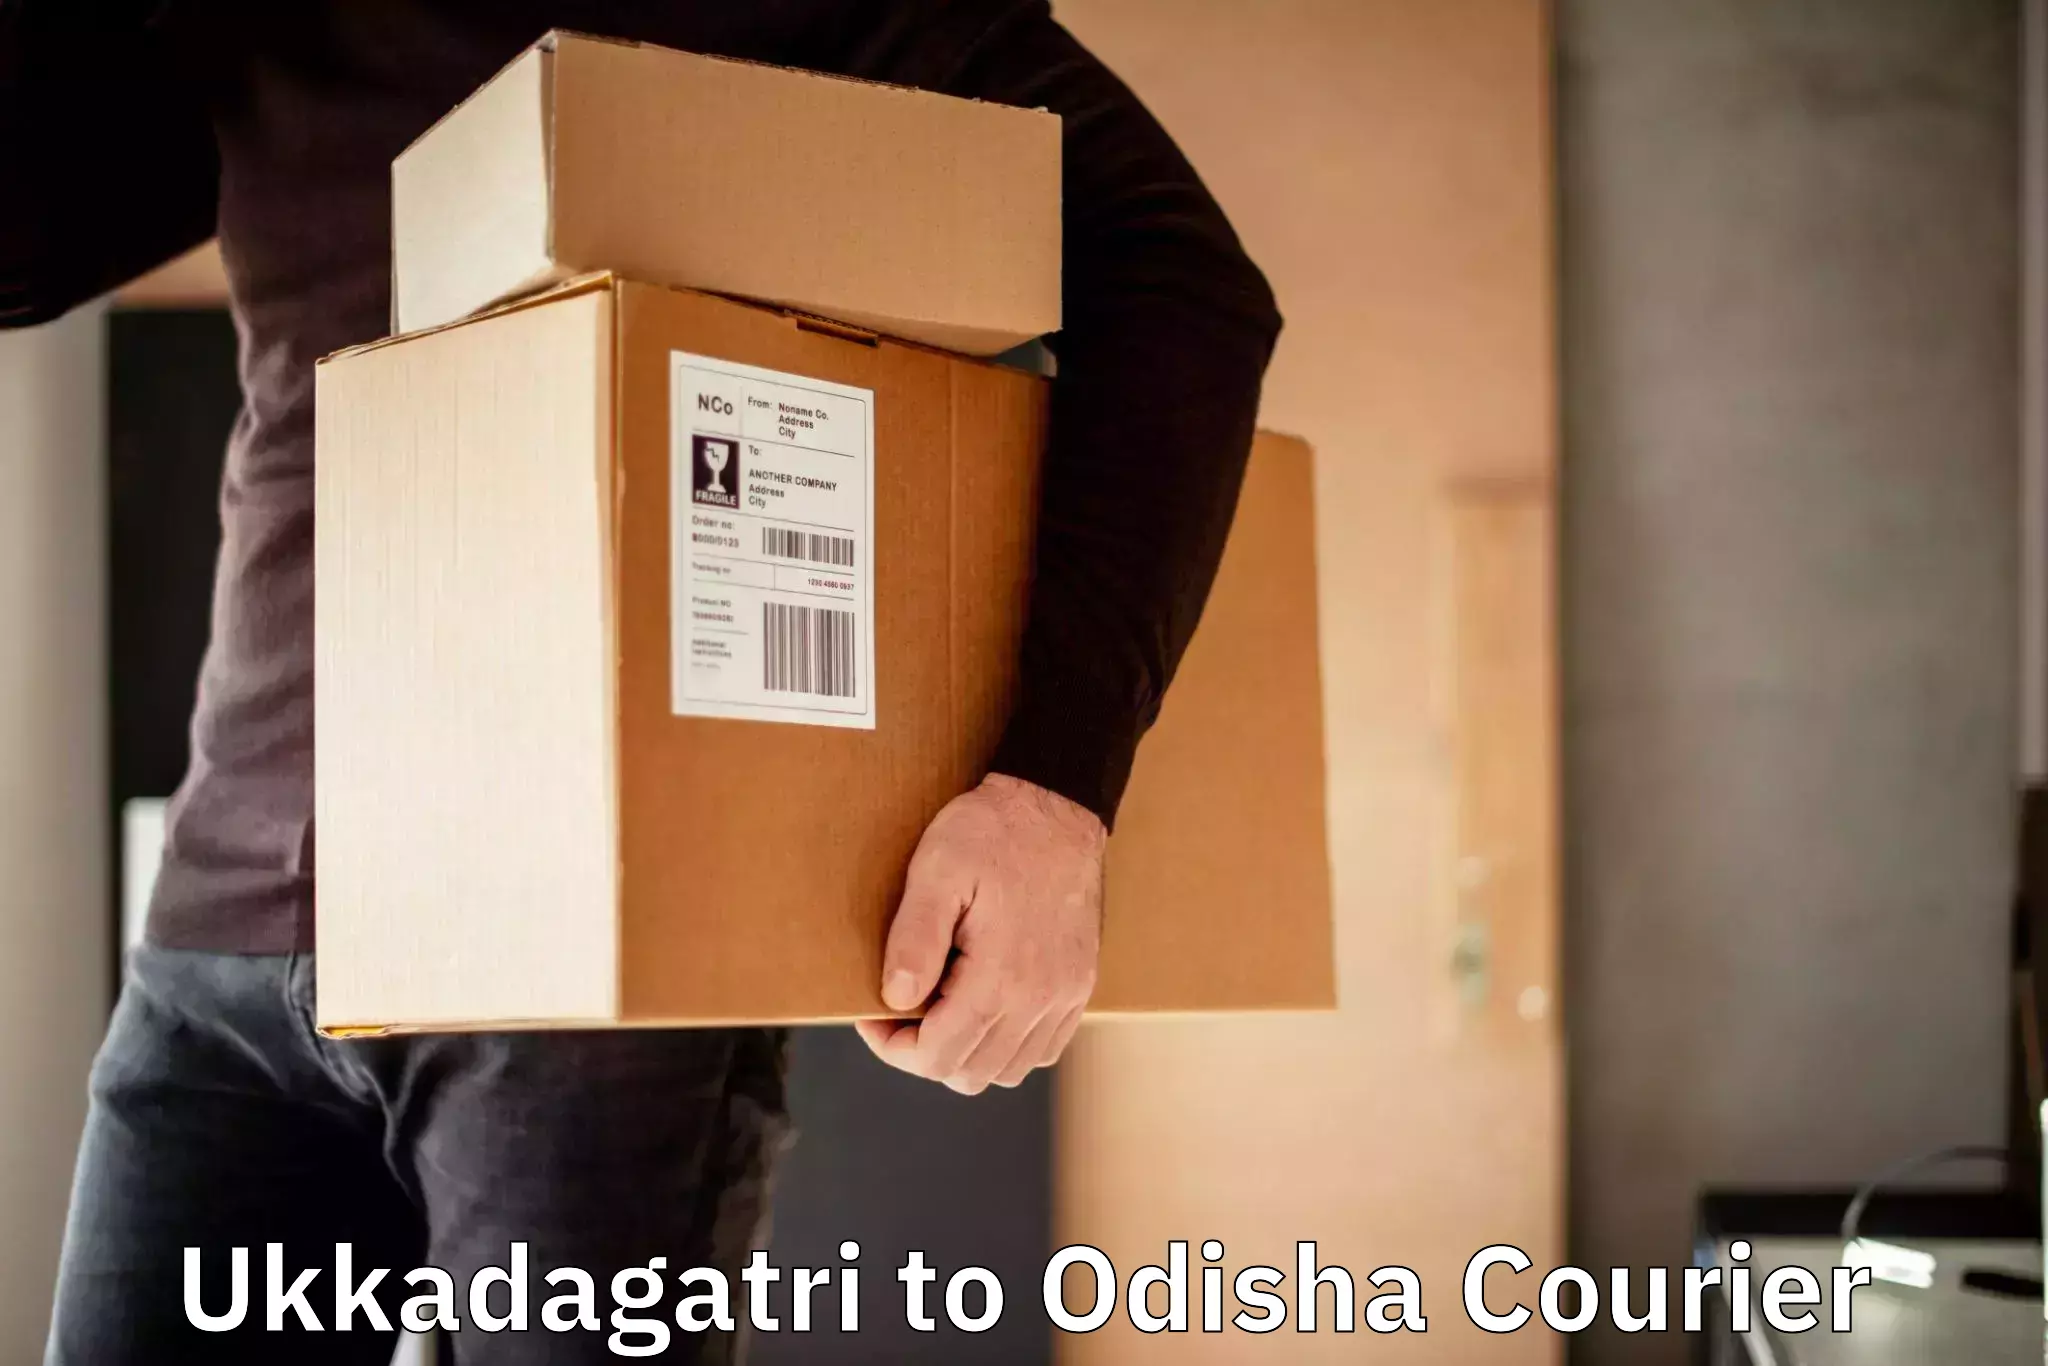 Premium courier services Ukkadagatri to Balasore